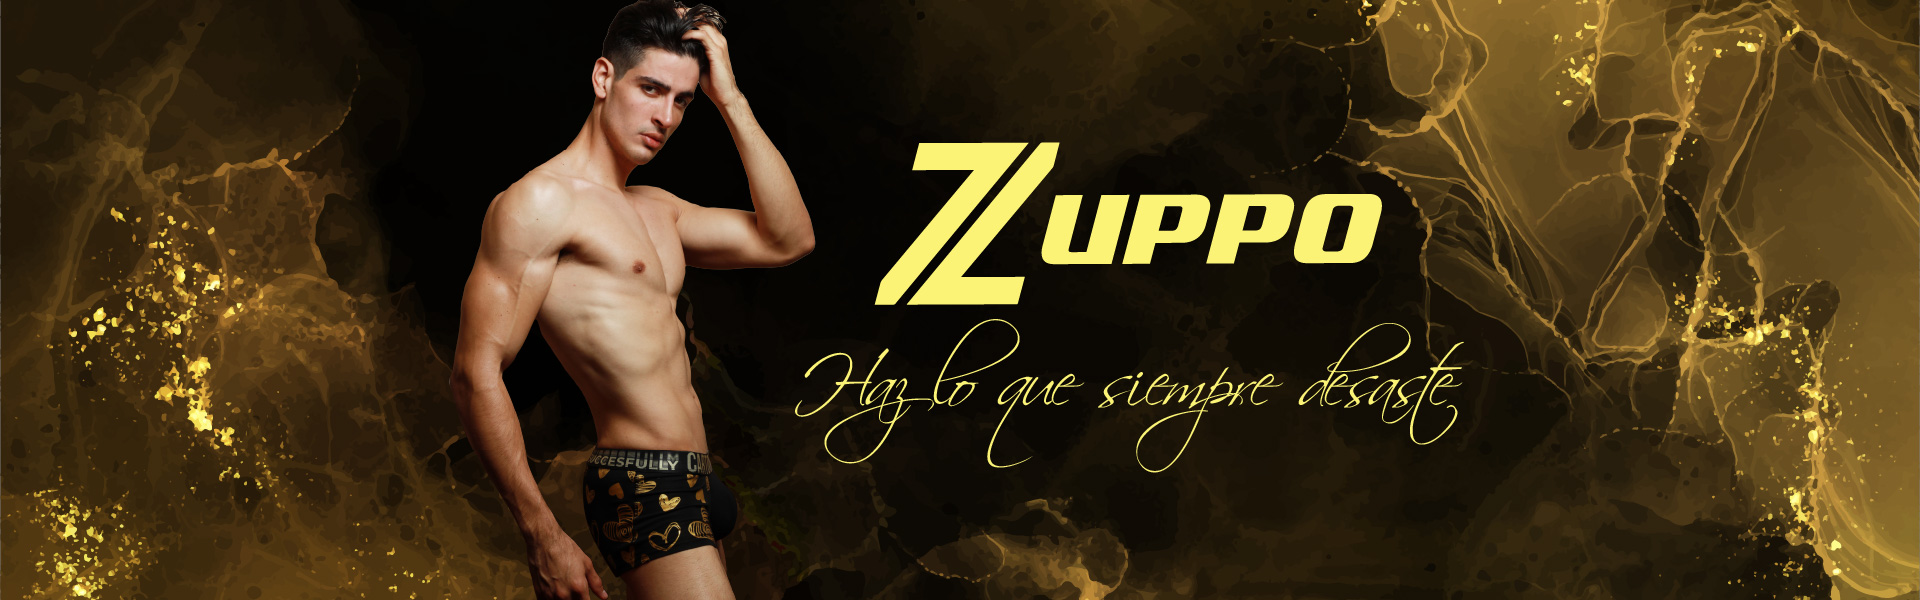 ZuppoStore – Ropa interior para caballeros | Haz lo que siempre deseaste